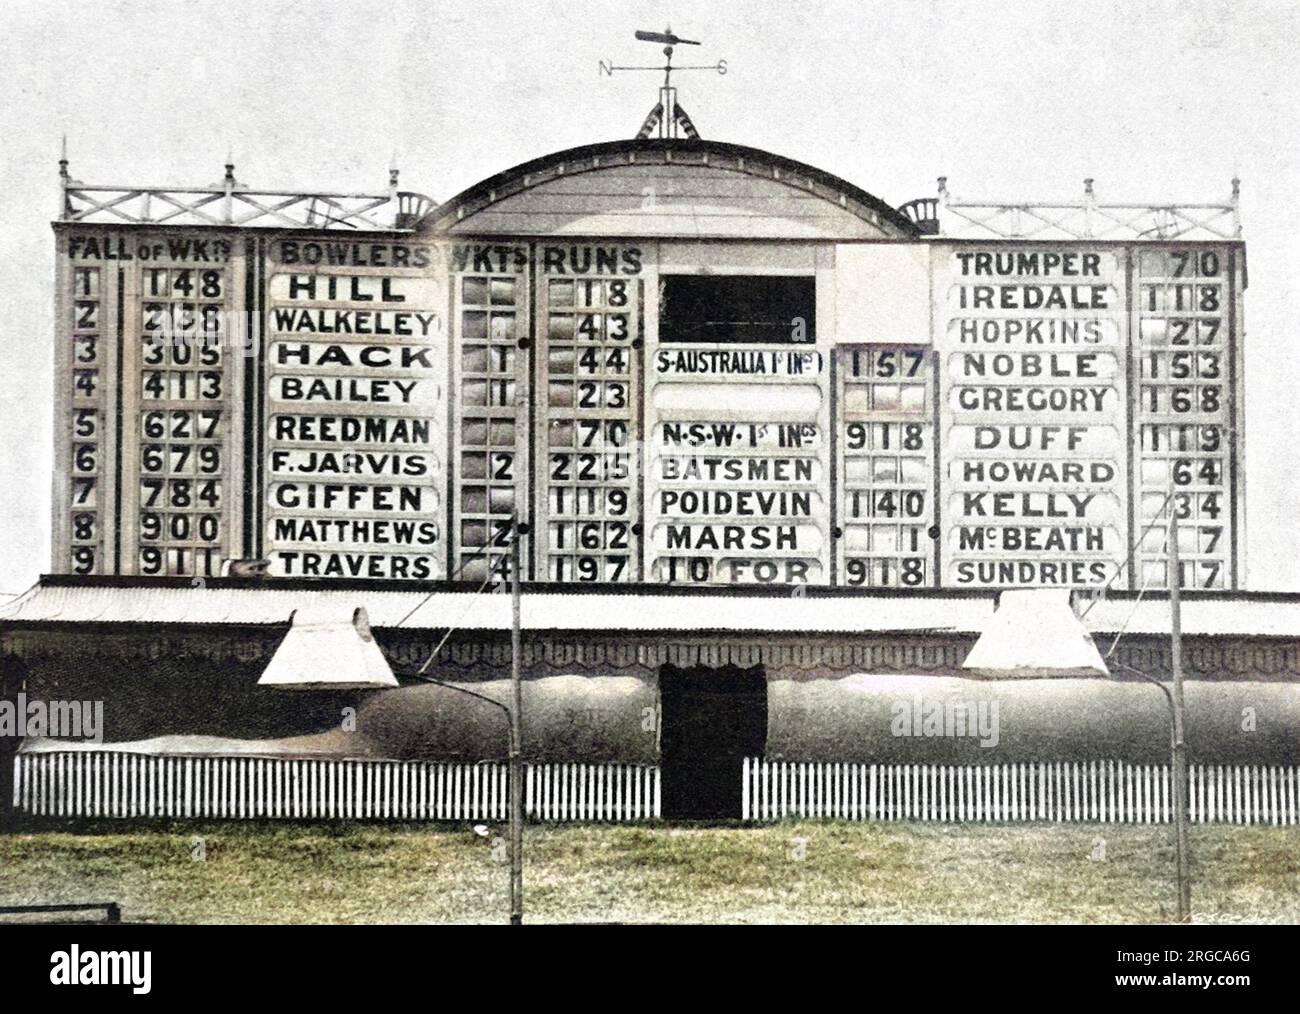 Il Sydney Cricket Ground Score-board durante la partita dello Sheffield Shield tra il nuovo Galles del Sud e l'Australia Meridionale, 8th gennaio 1901. Sono stati registrati nuovi record, mentre il nuovo Galles del Sud ha totalizzato 918 punti, con cinque dei loro giocatori che hanno totalizzato secoli. Foto Stock